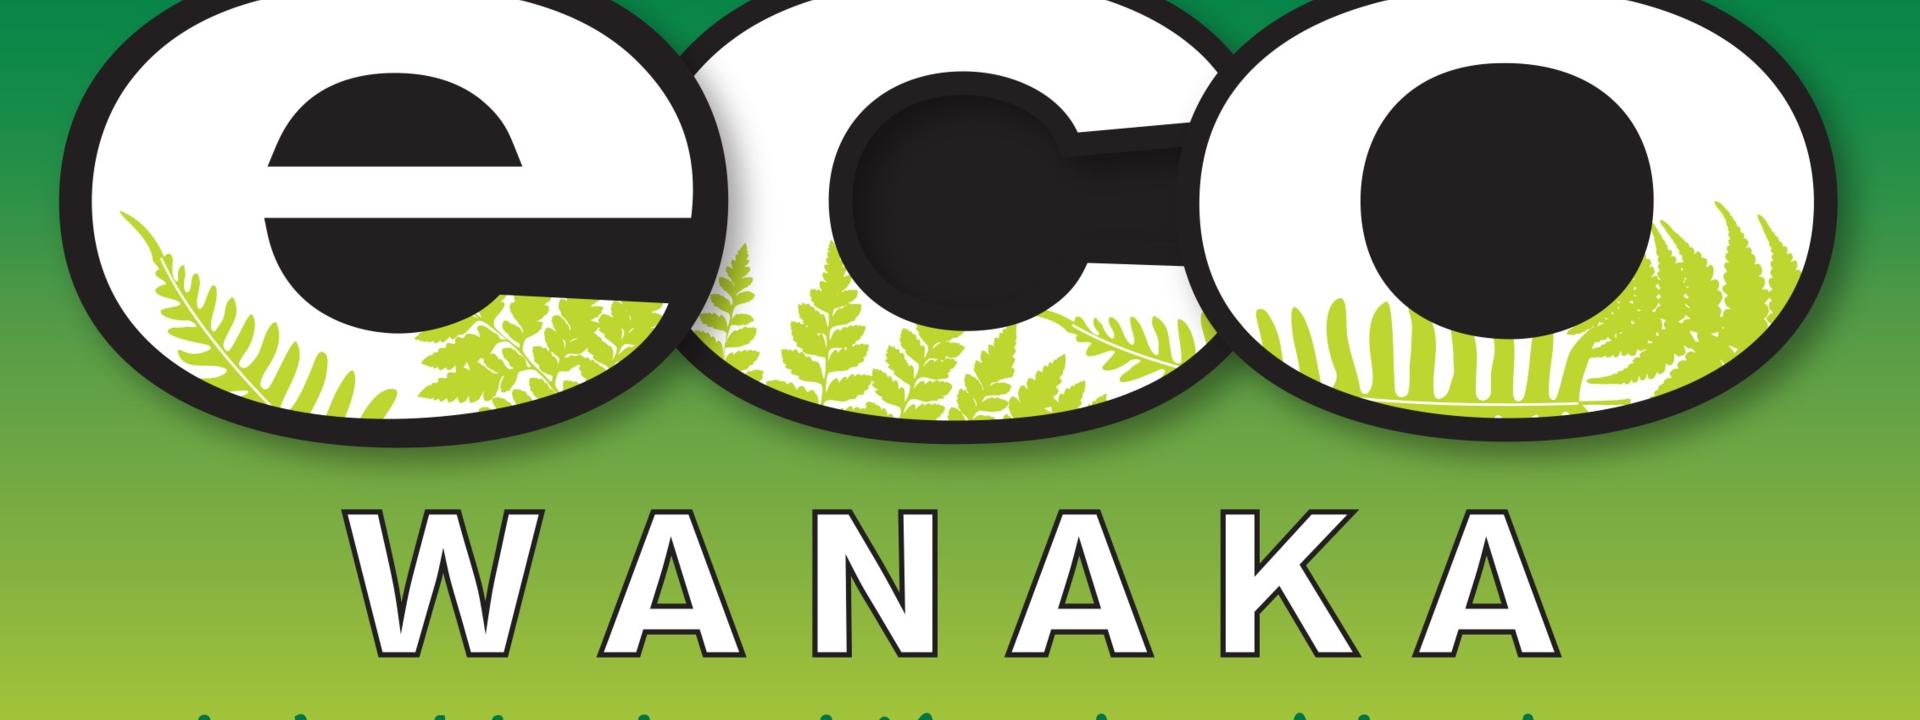 eco-wanaka-logo-new-2020.jpg